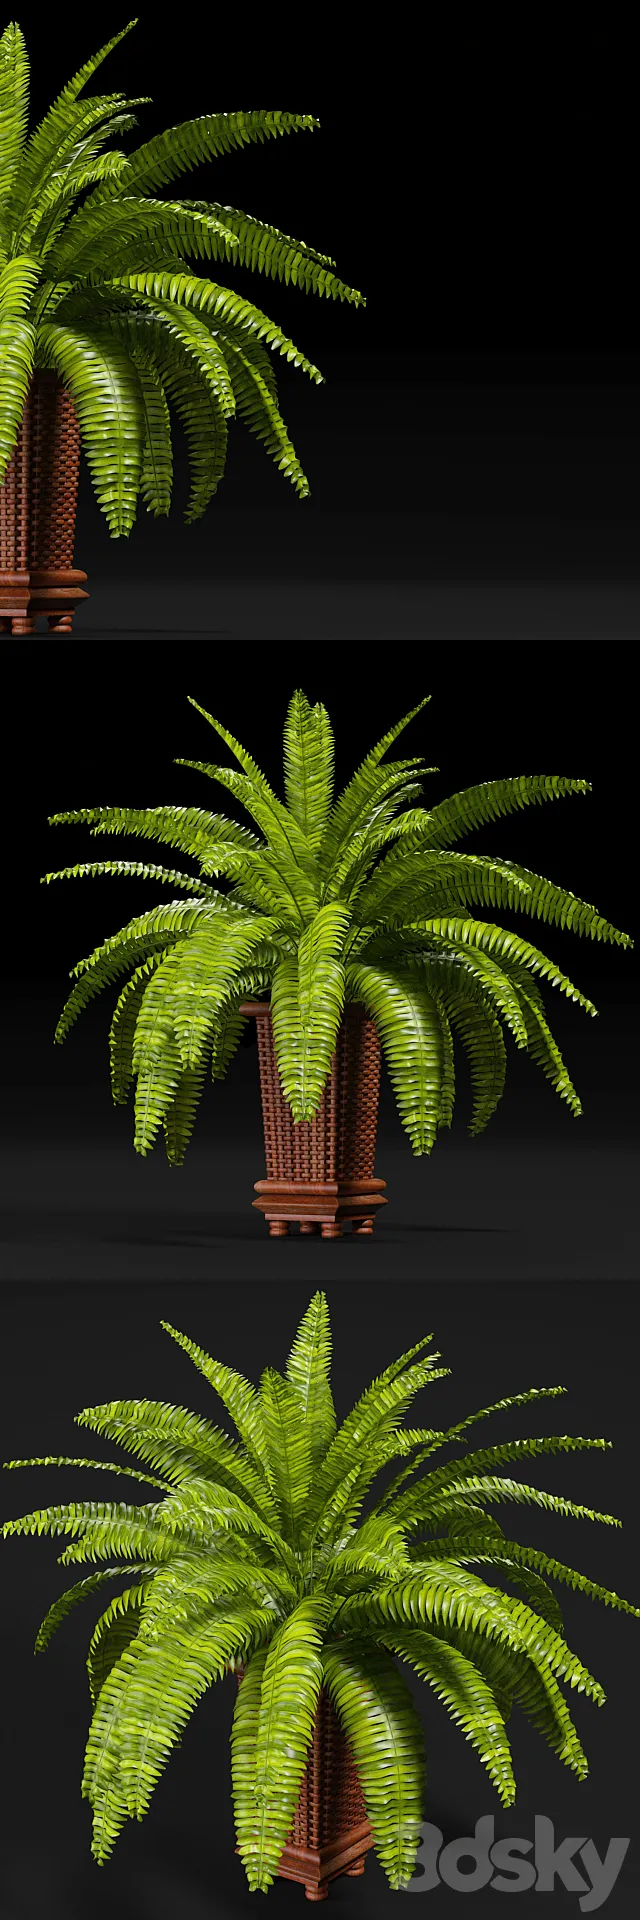 Plants – Flowers – 3D Models Download – 0380